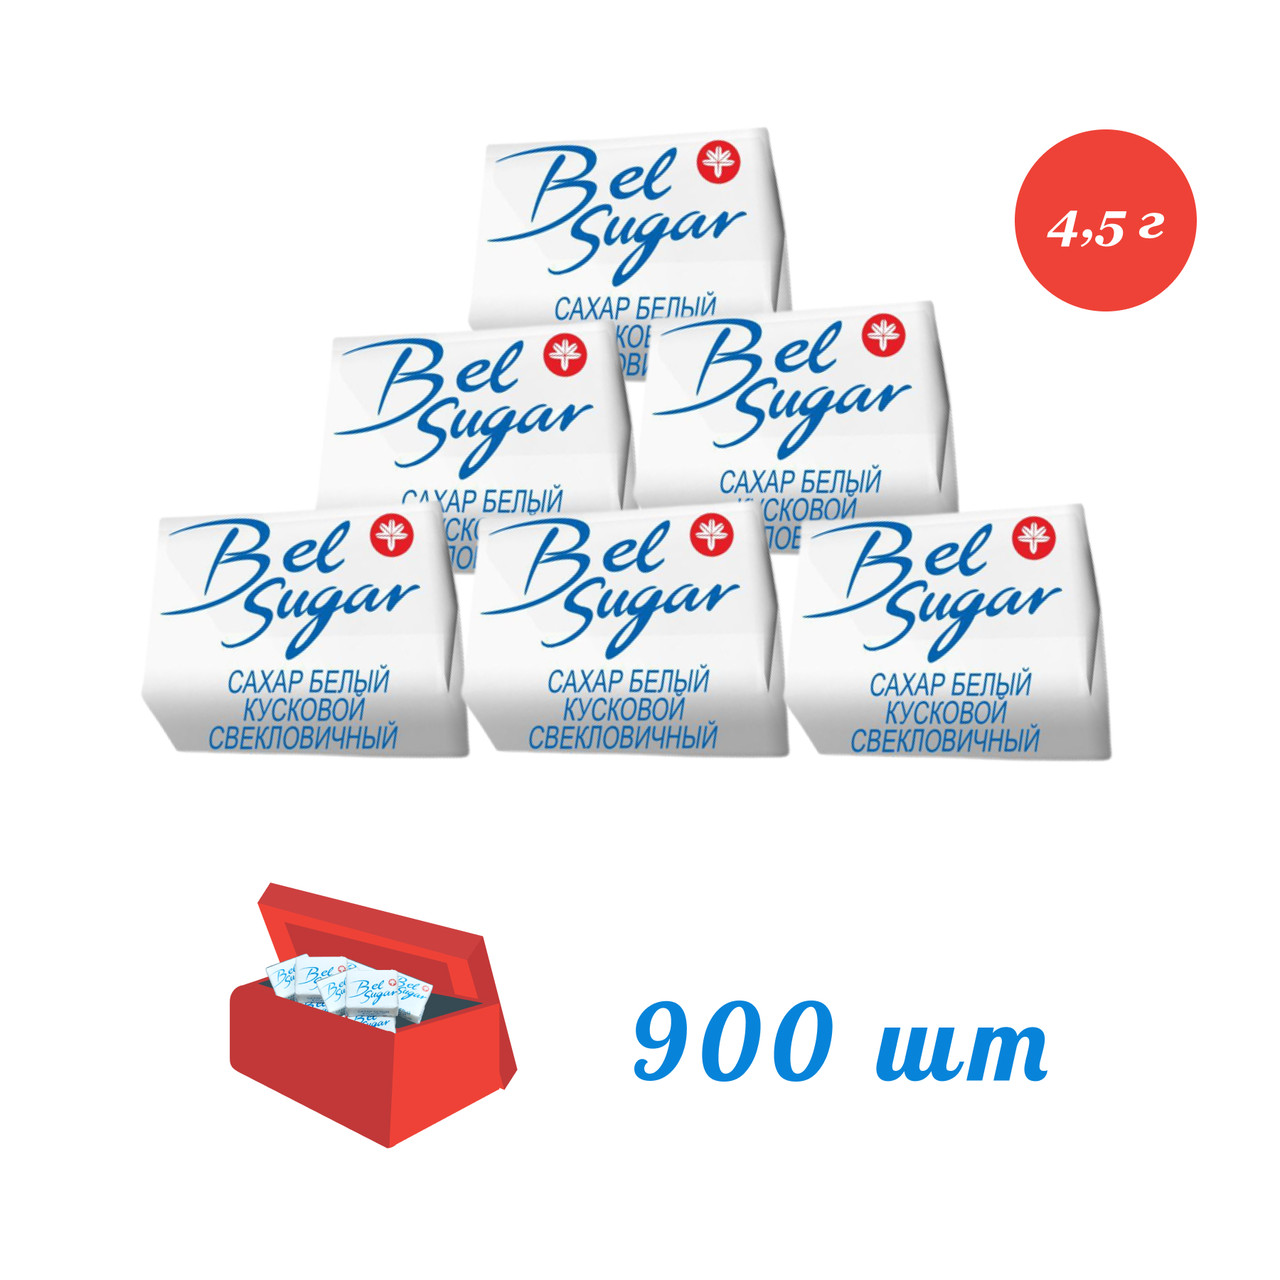 Сахар белый, прессованный, быстрорастворимый, кубик 4,5 г, коробка 900 шт.